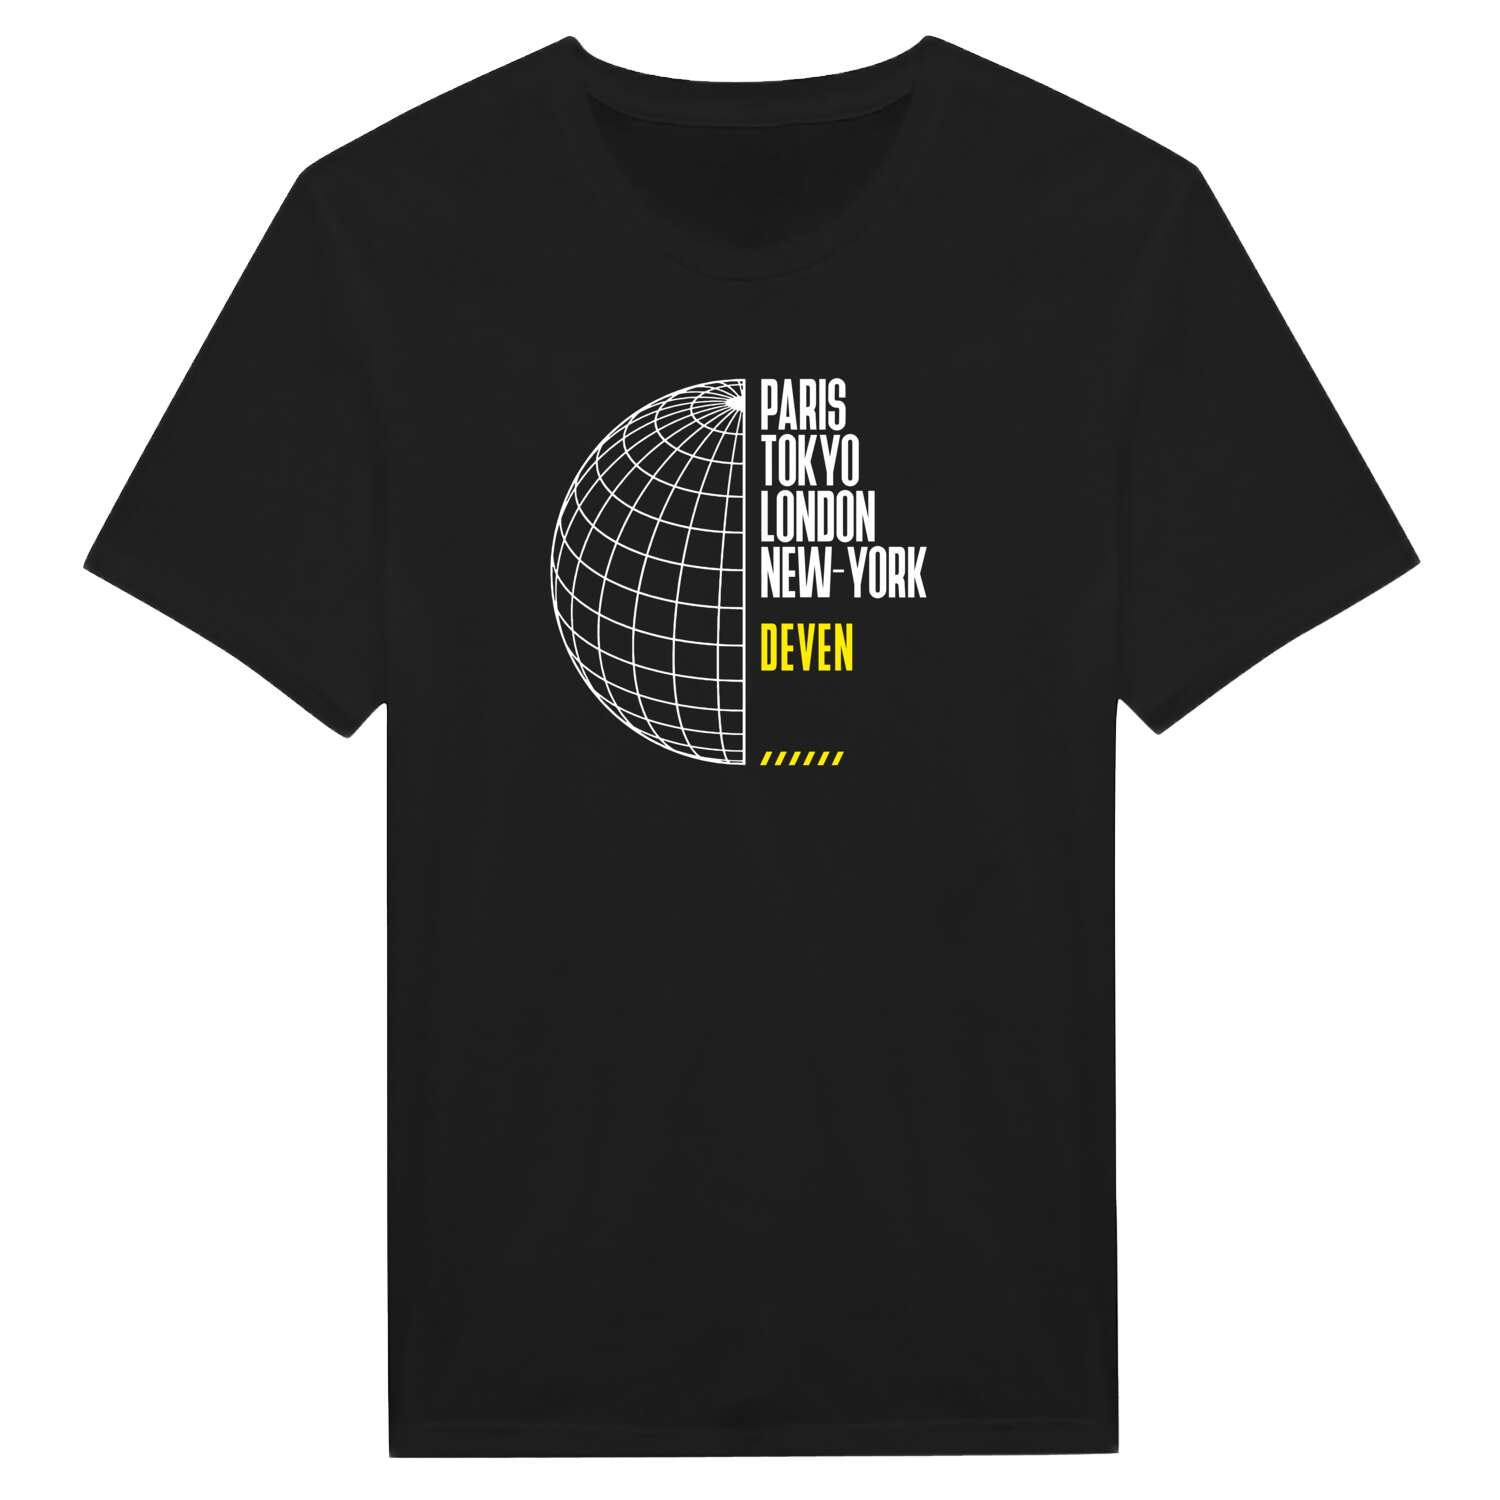 Deven T-Shirt »Paris Tokyo London«